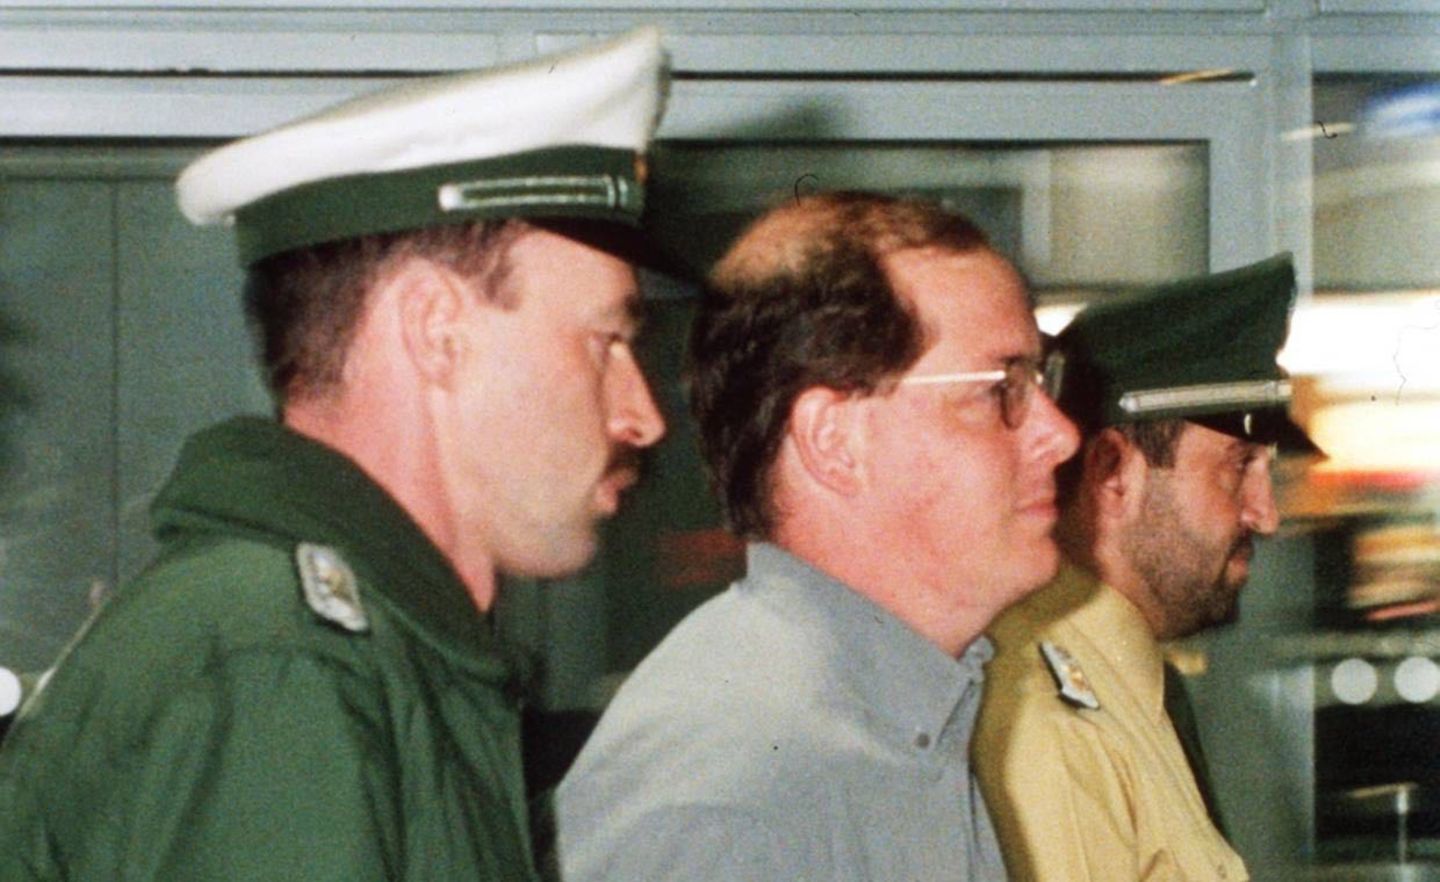 Ende einer Flucht: In Frankfurt wird Nick Leeson (M.) 1995 festgenommen